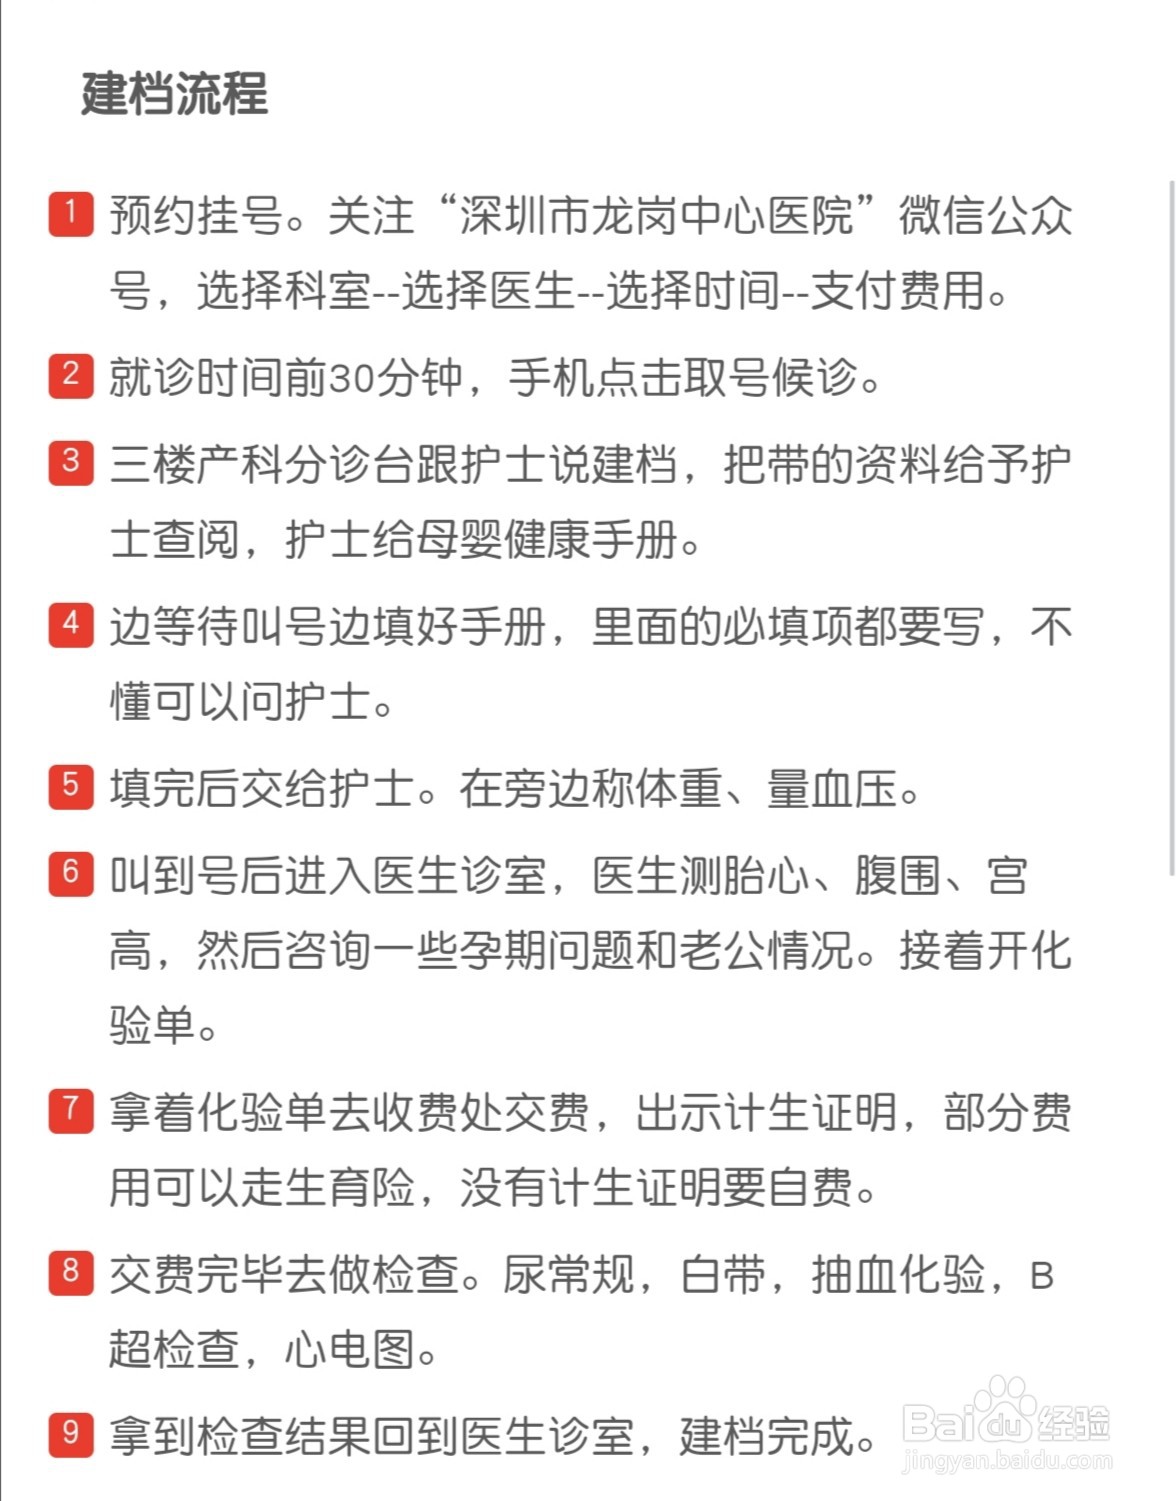 深圳市宝安区中医院生孩子建卡、建档条件、流程